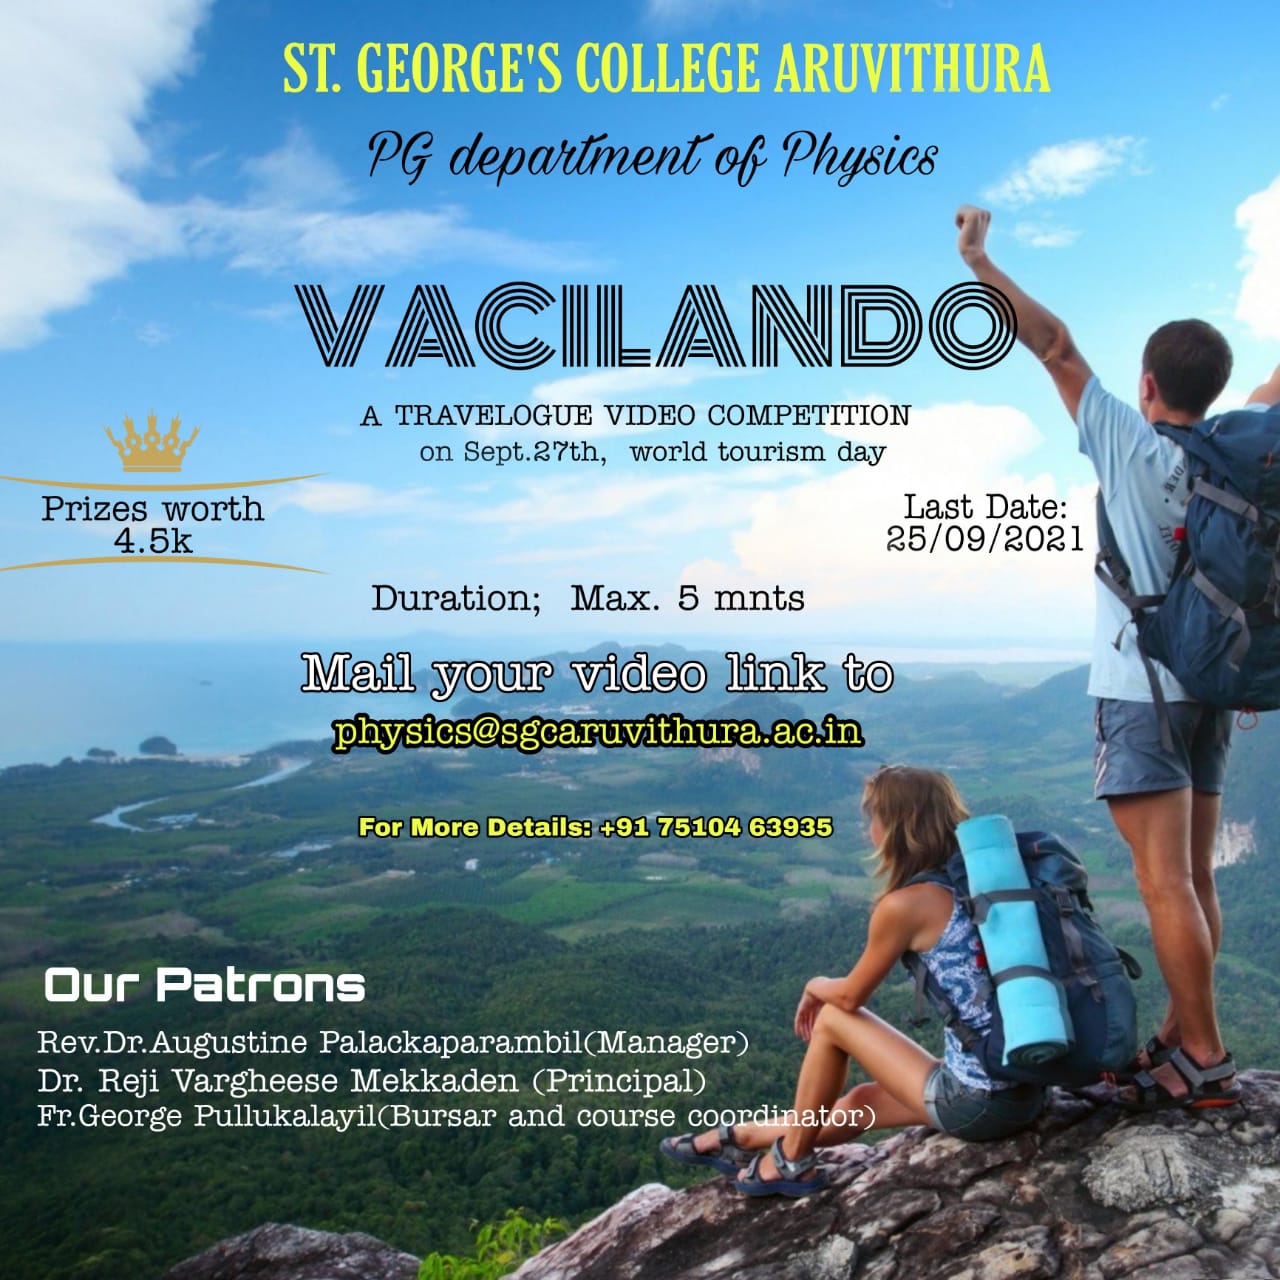 VACILANDO - Travelogue Video Competition